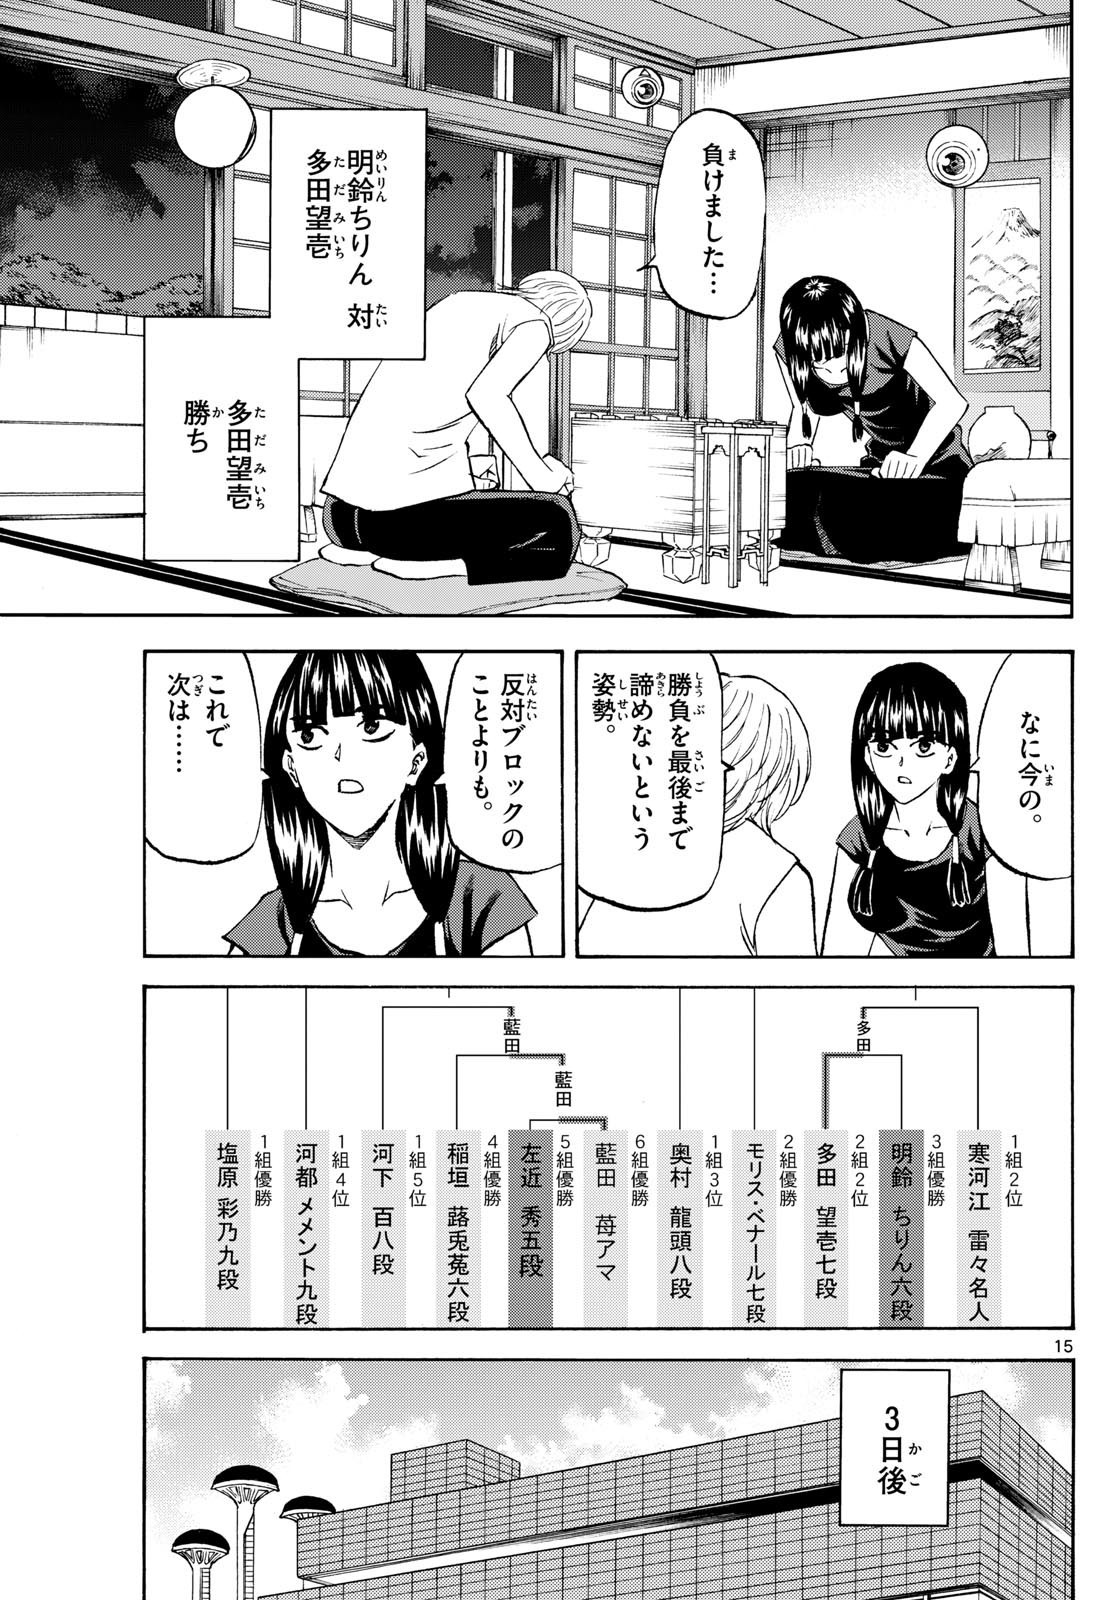 Tatsu to Ichigo - Chapter 199 - Page 15